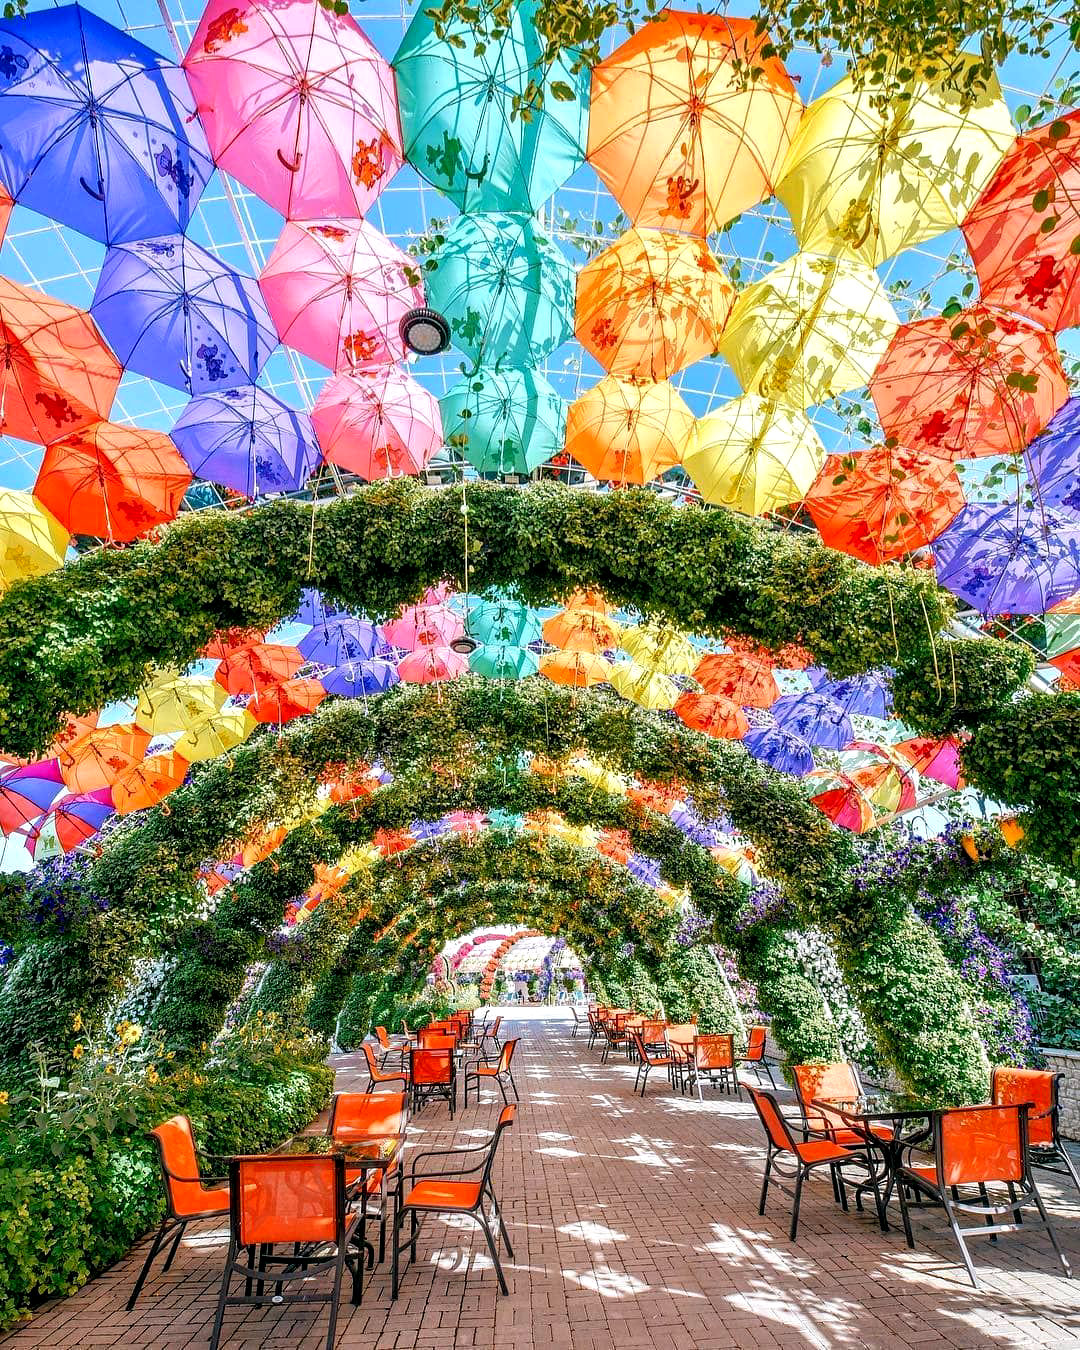 Арка из цветов и разноцветных зонтиков отличная локация для фото